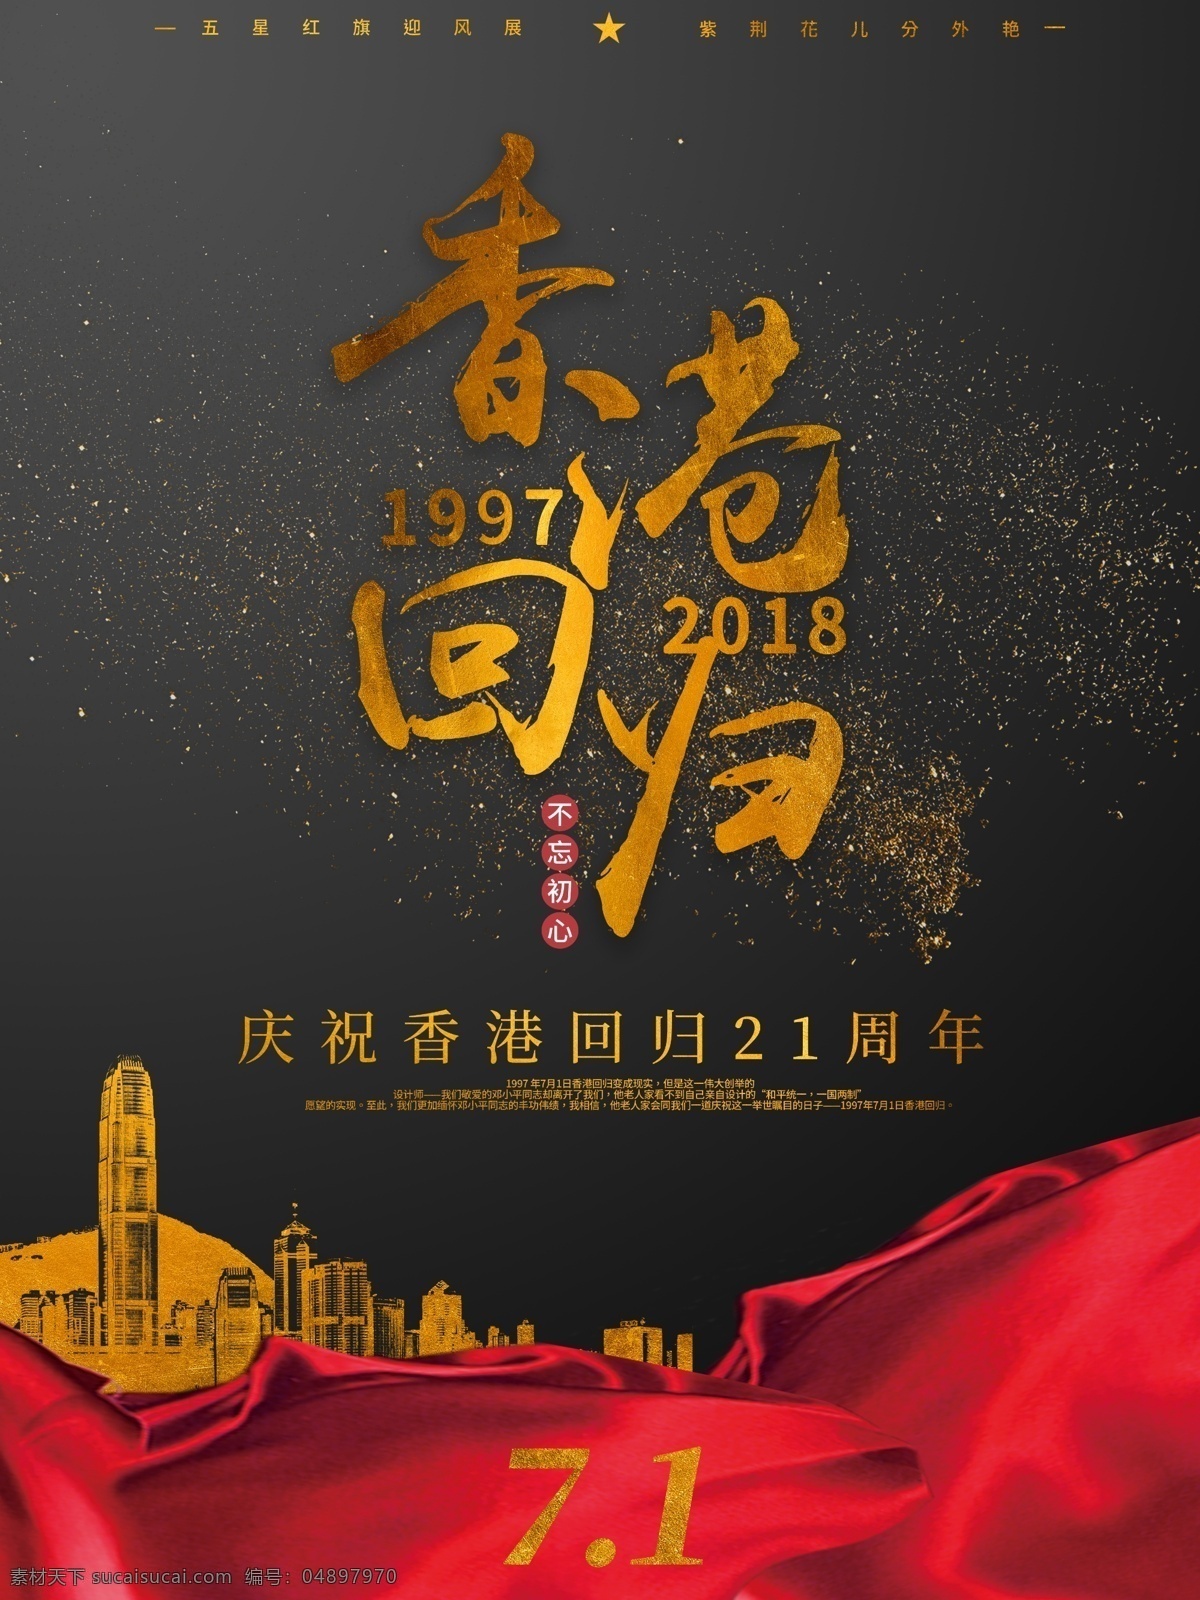 大气 黑金 红 飘带 香港 回归 日 宣传海报 金色字体 金沙 红色飘带 红丝带 香港回归日 金粉